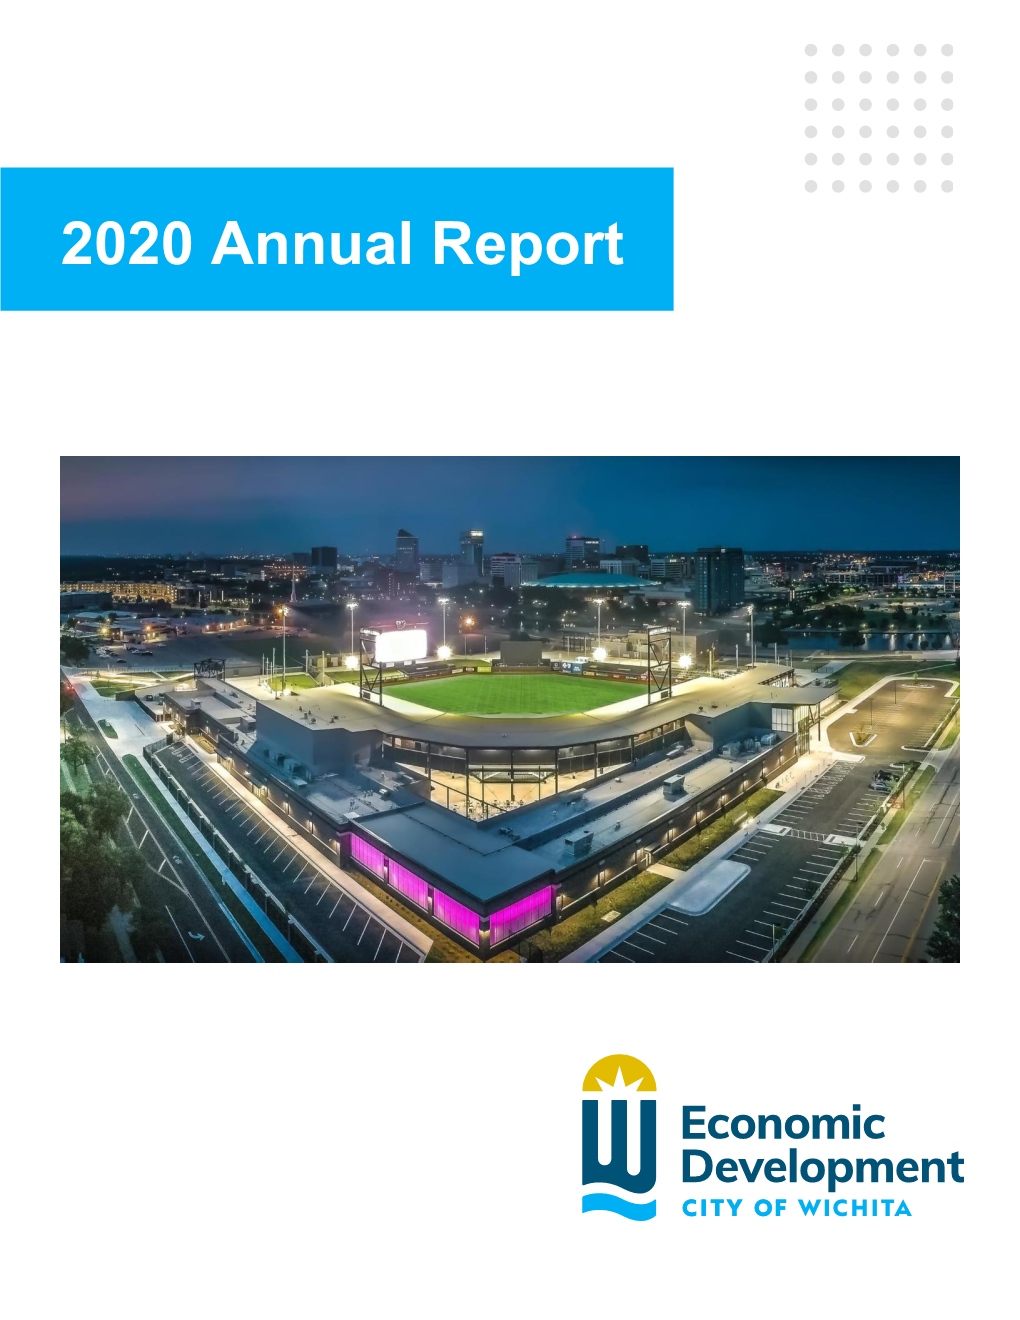 Economic Development Annual Report 2020